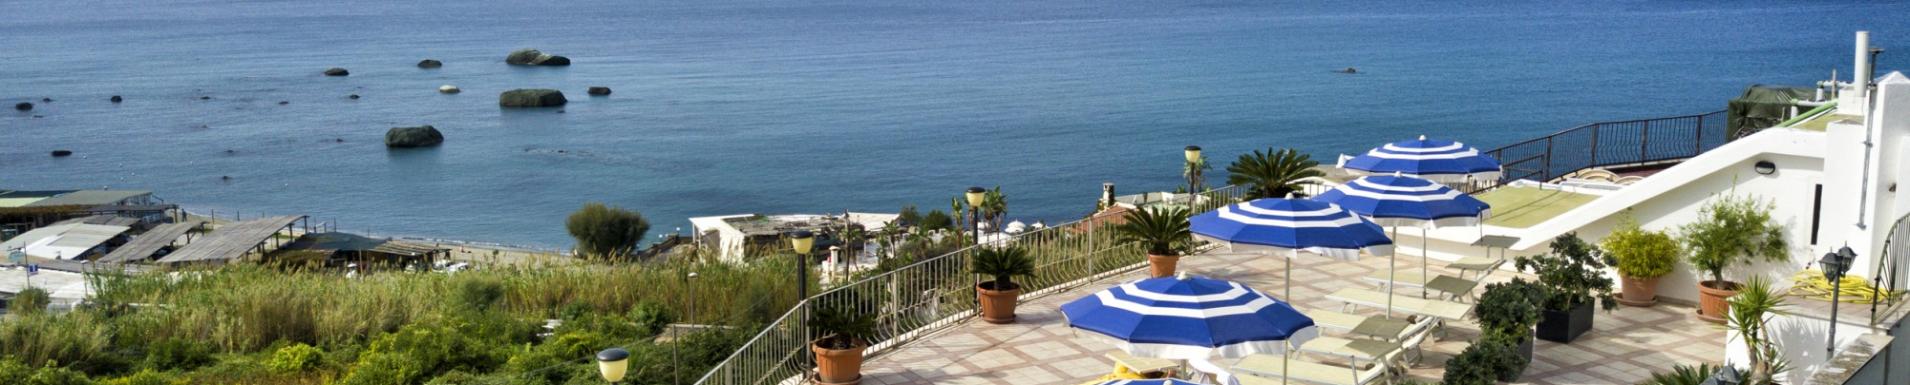 September Holidays Offer in Ischia